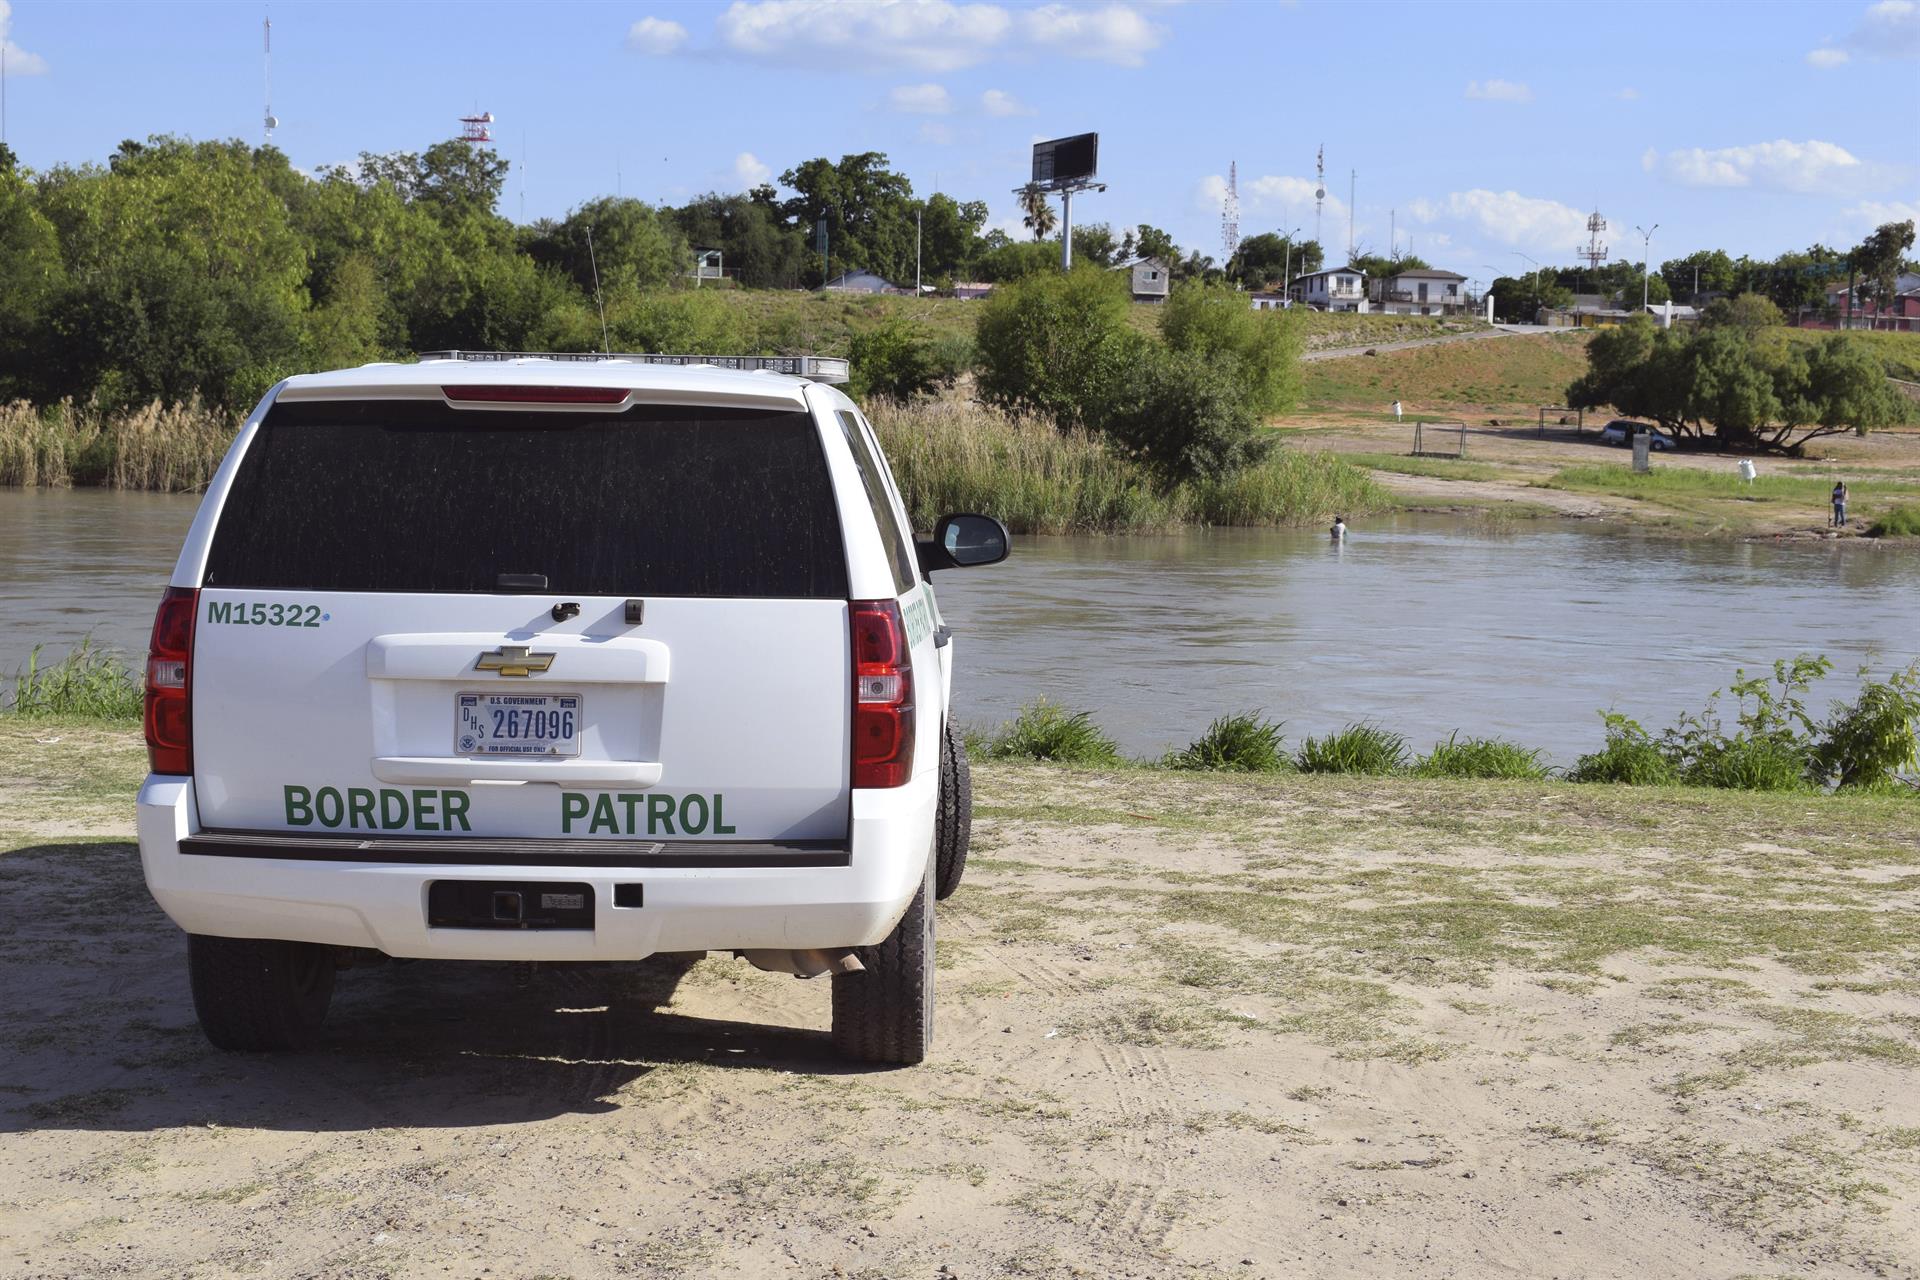 Un vehículo de la patrulla fronteriza de EEUU durante un simulacro de operación de vigilancia en Laredo, a orillas del Rio Bravo, imagen de archivo. MINDS/EFE/Alex Segura Lozano
